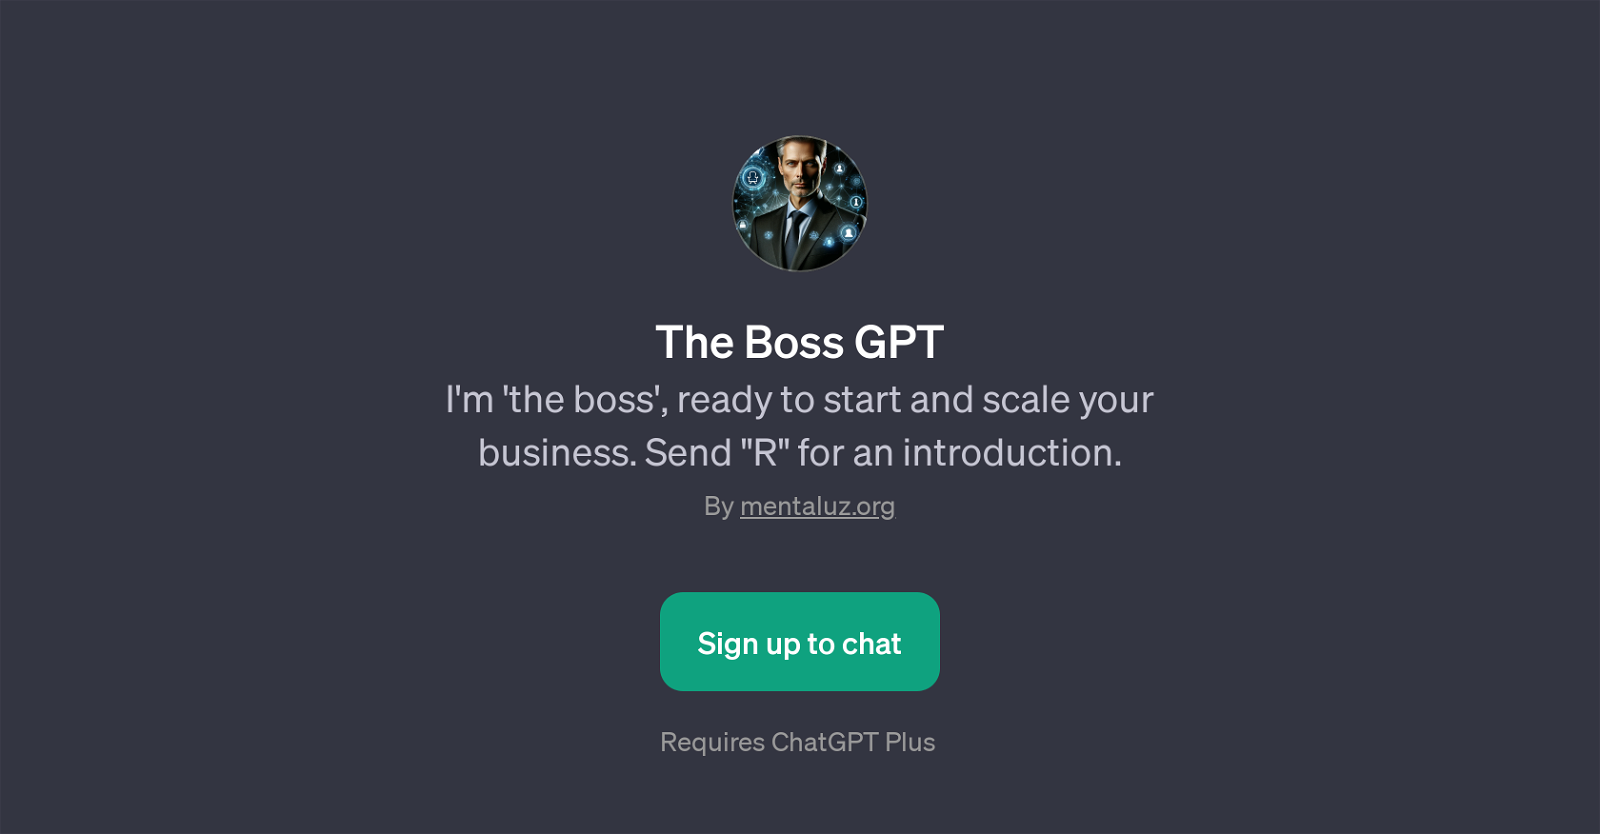 The Boss GPT website